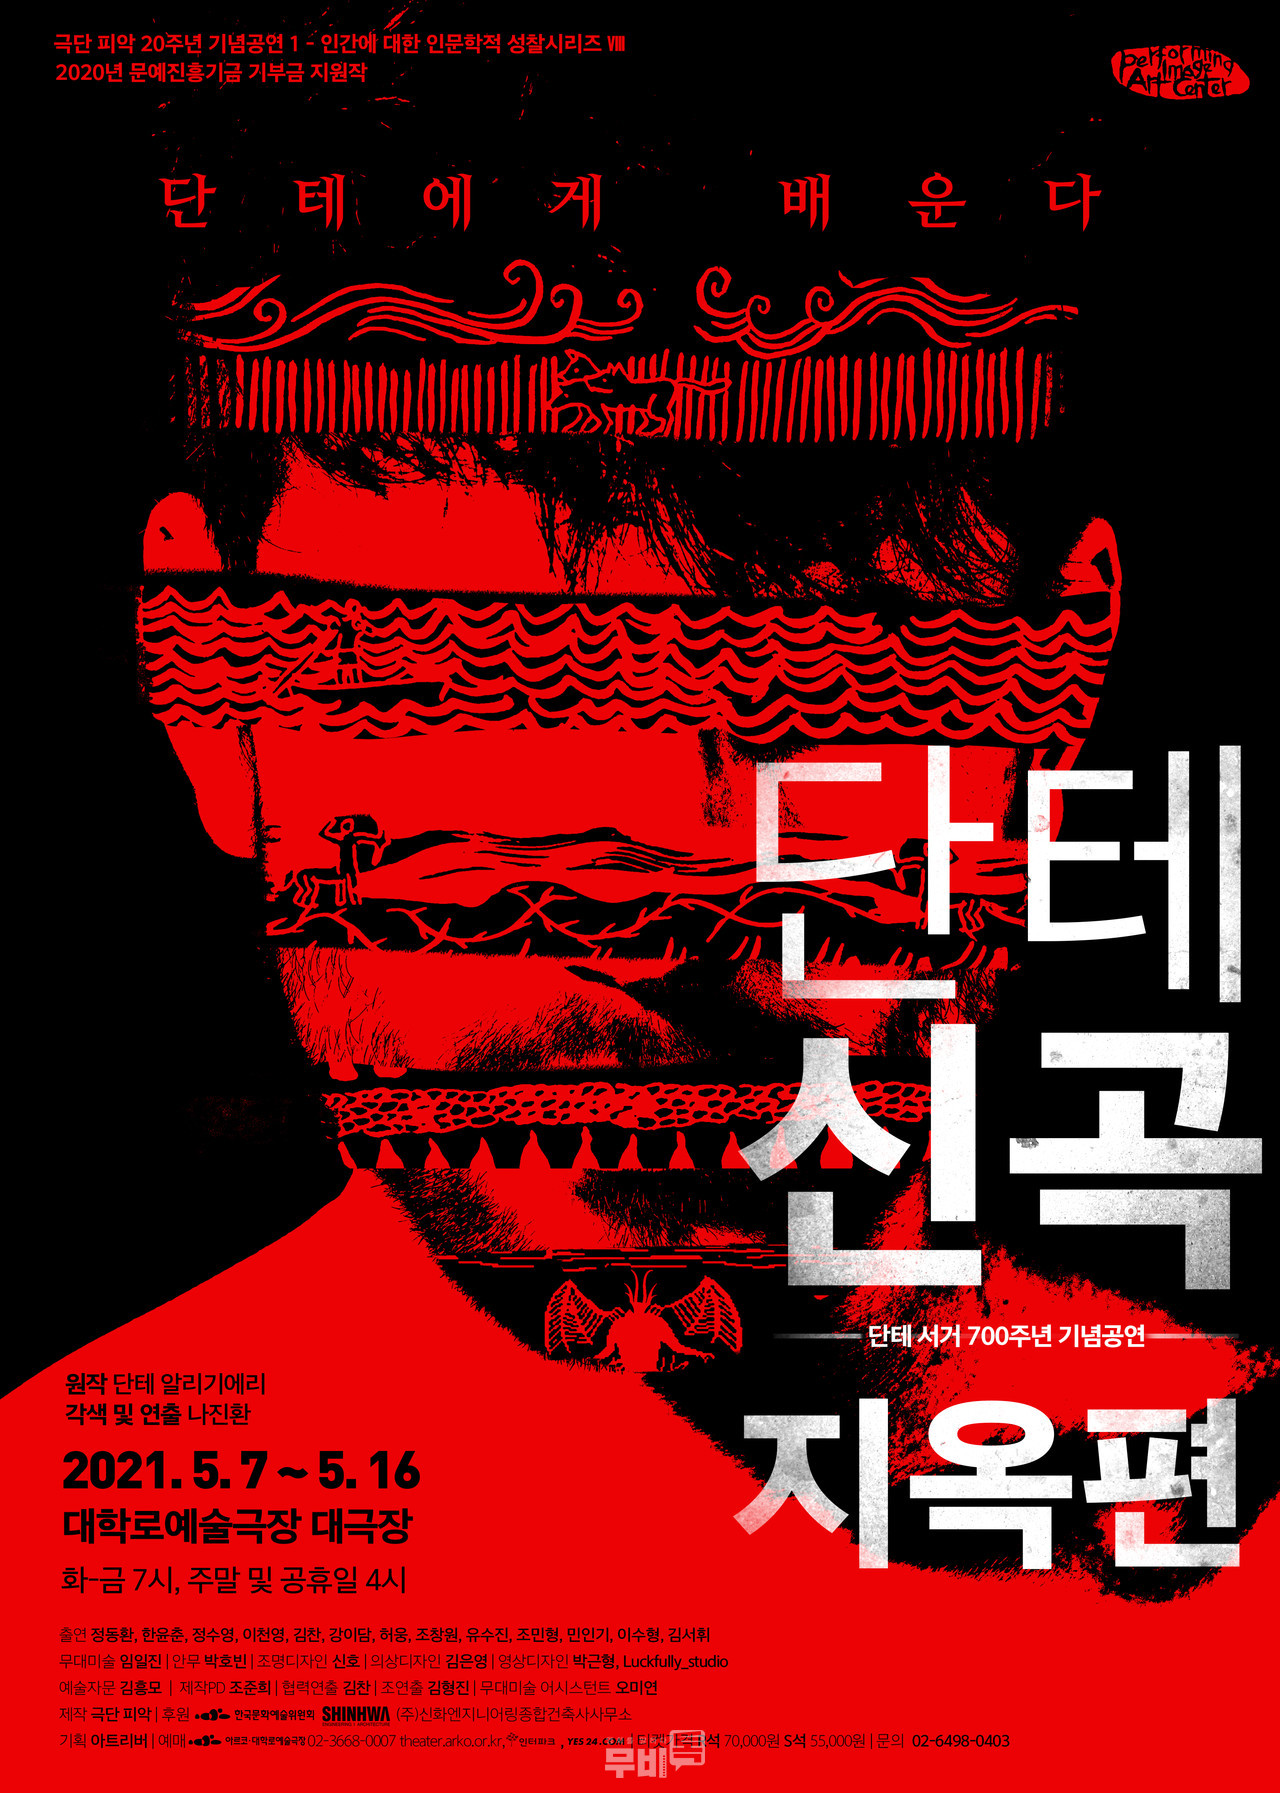 극단 피앗의 단테의 신곡-지옥편 공식 포스터